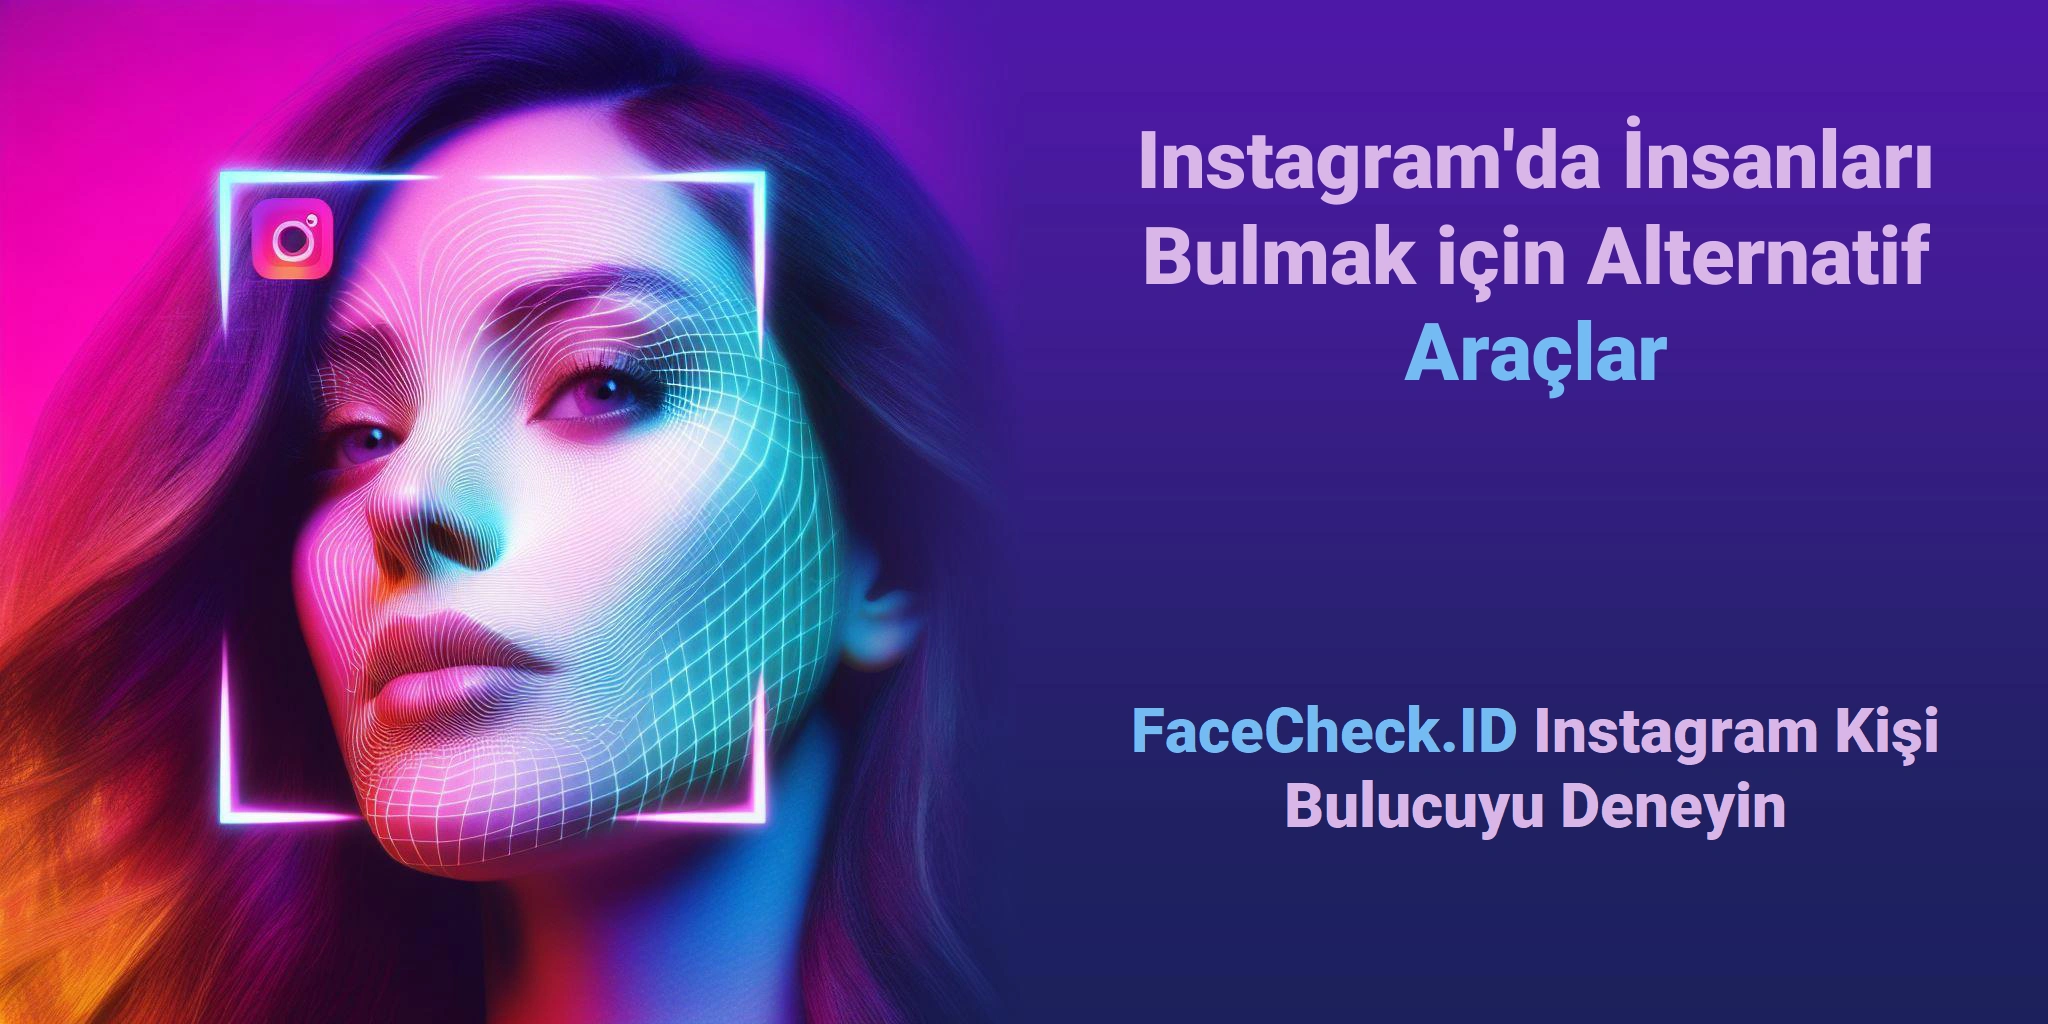 Instagram'da İnsanları Bulmak için Alternatif Araçlar FaceCheck.ID Instagram Kişi Bulucuyu Deneyin